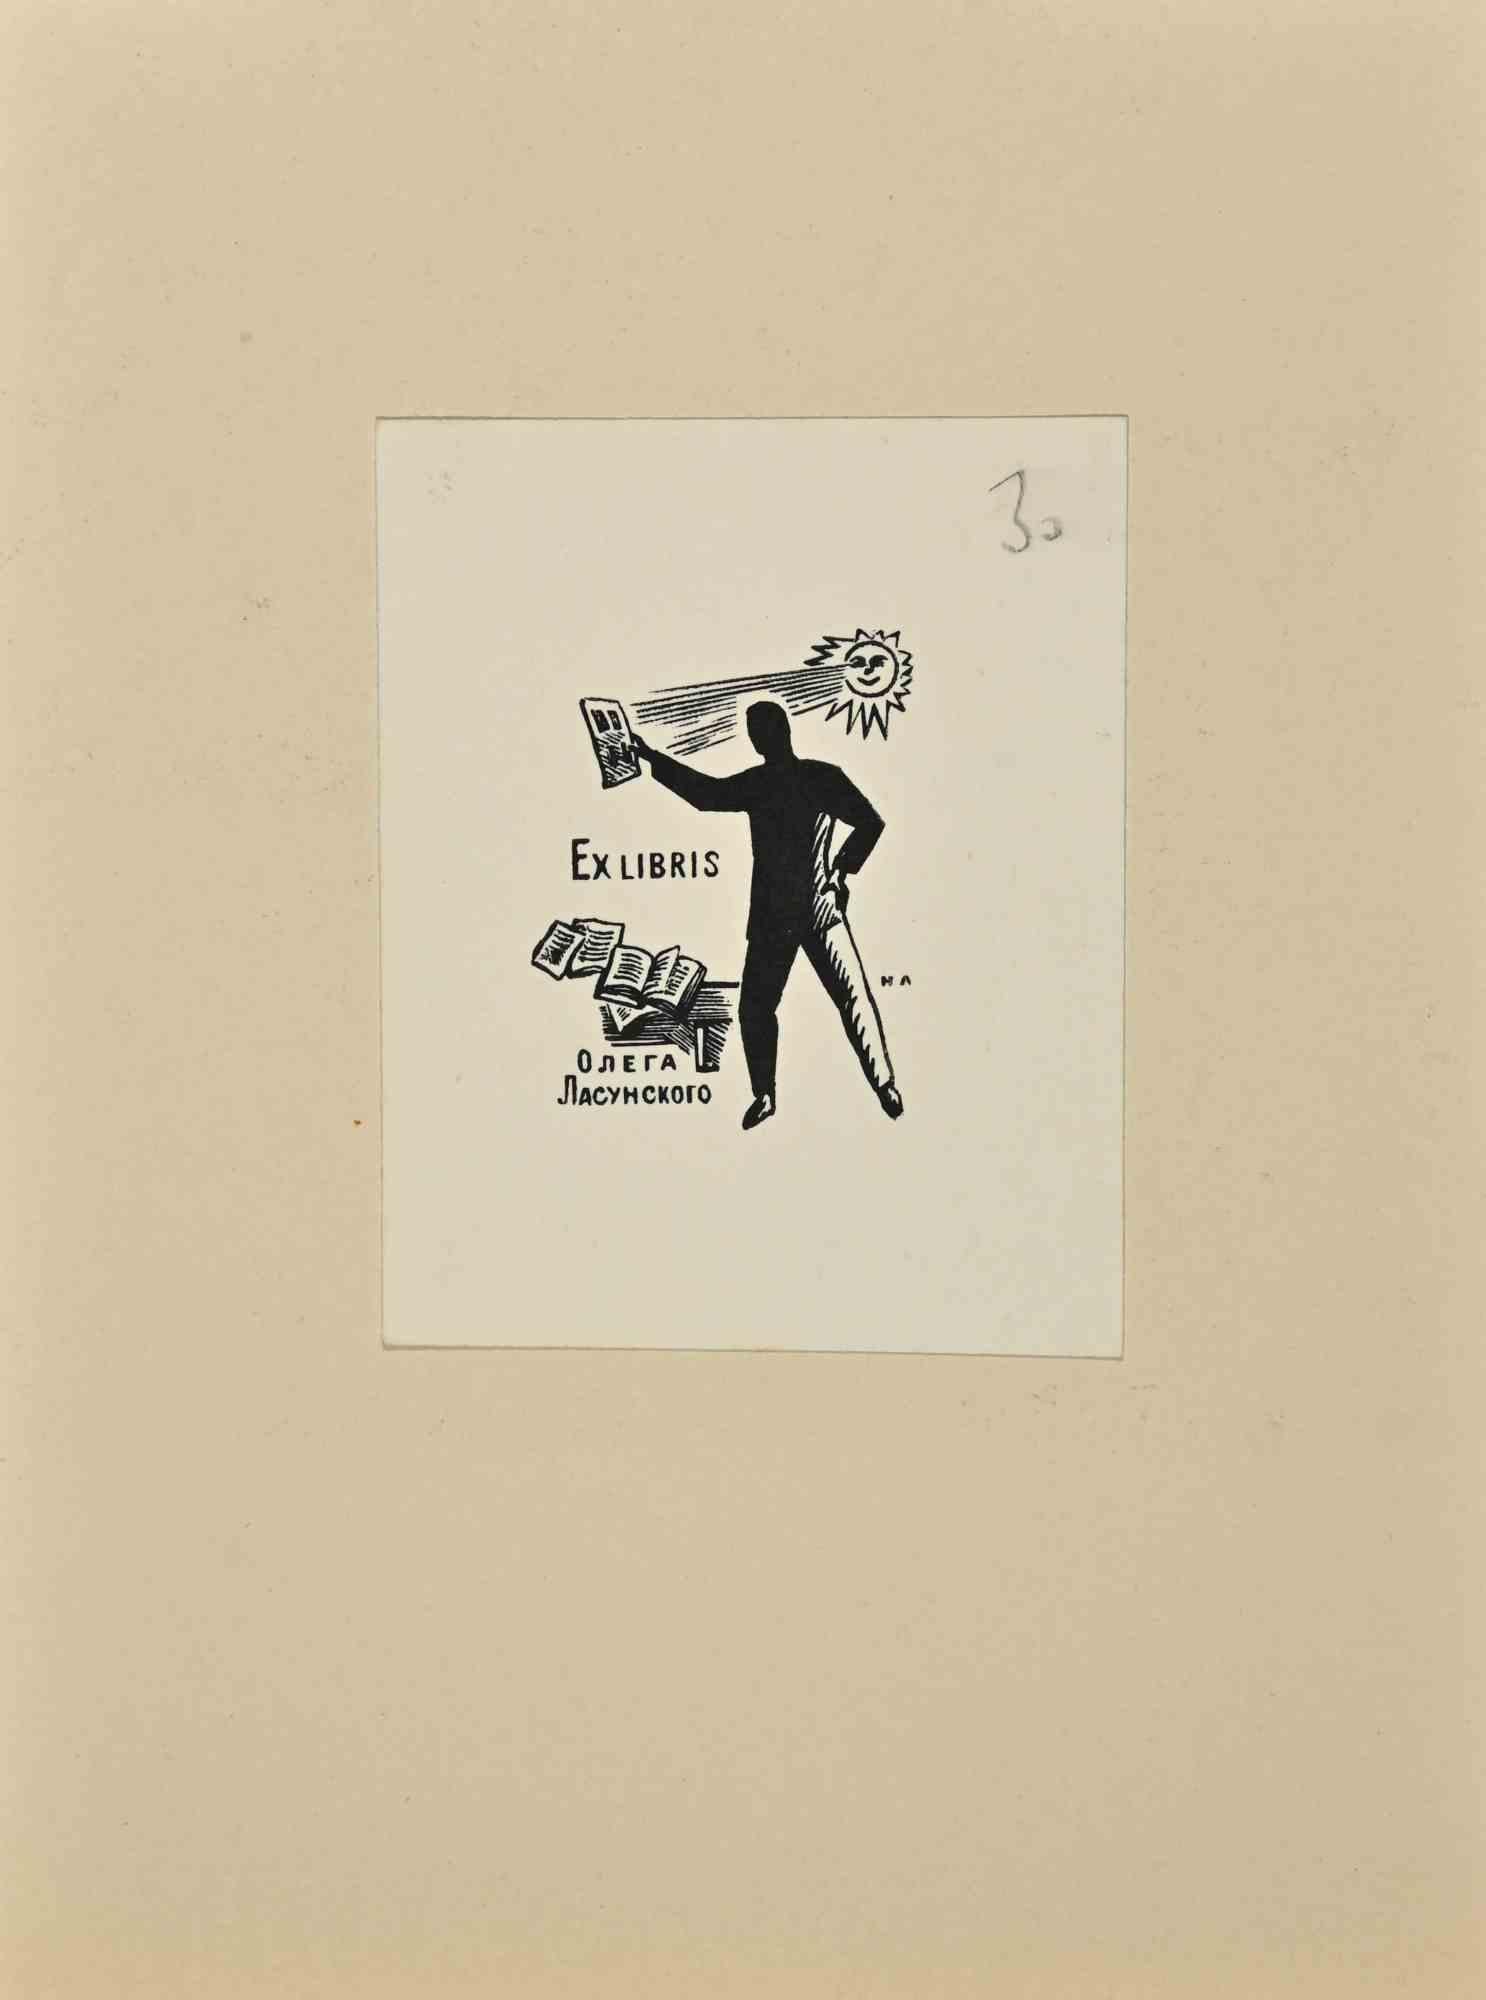  Ex Libris  - Woodcut - Mid 20th Century